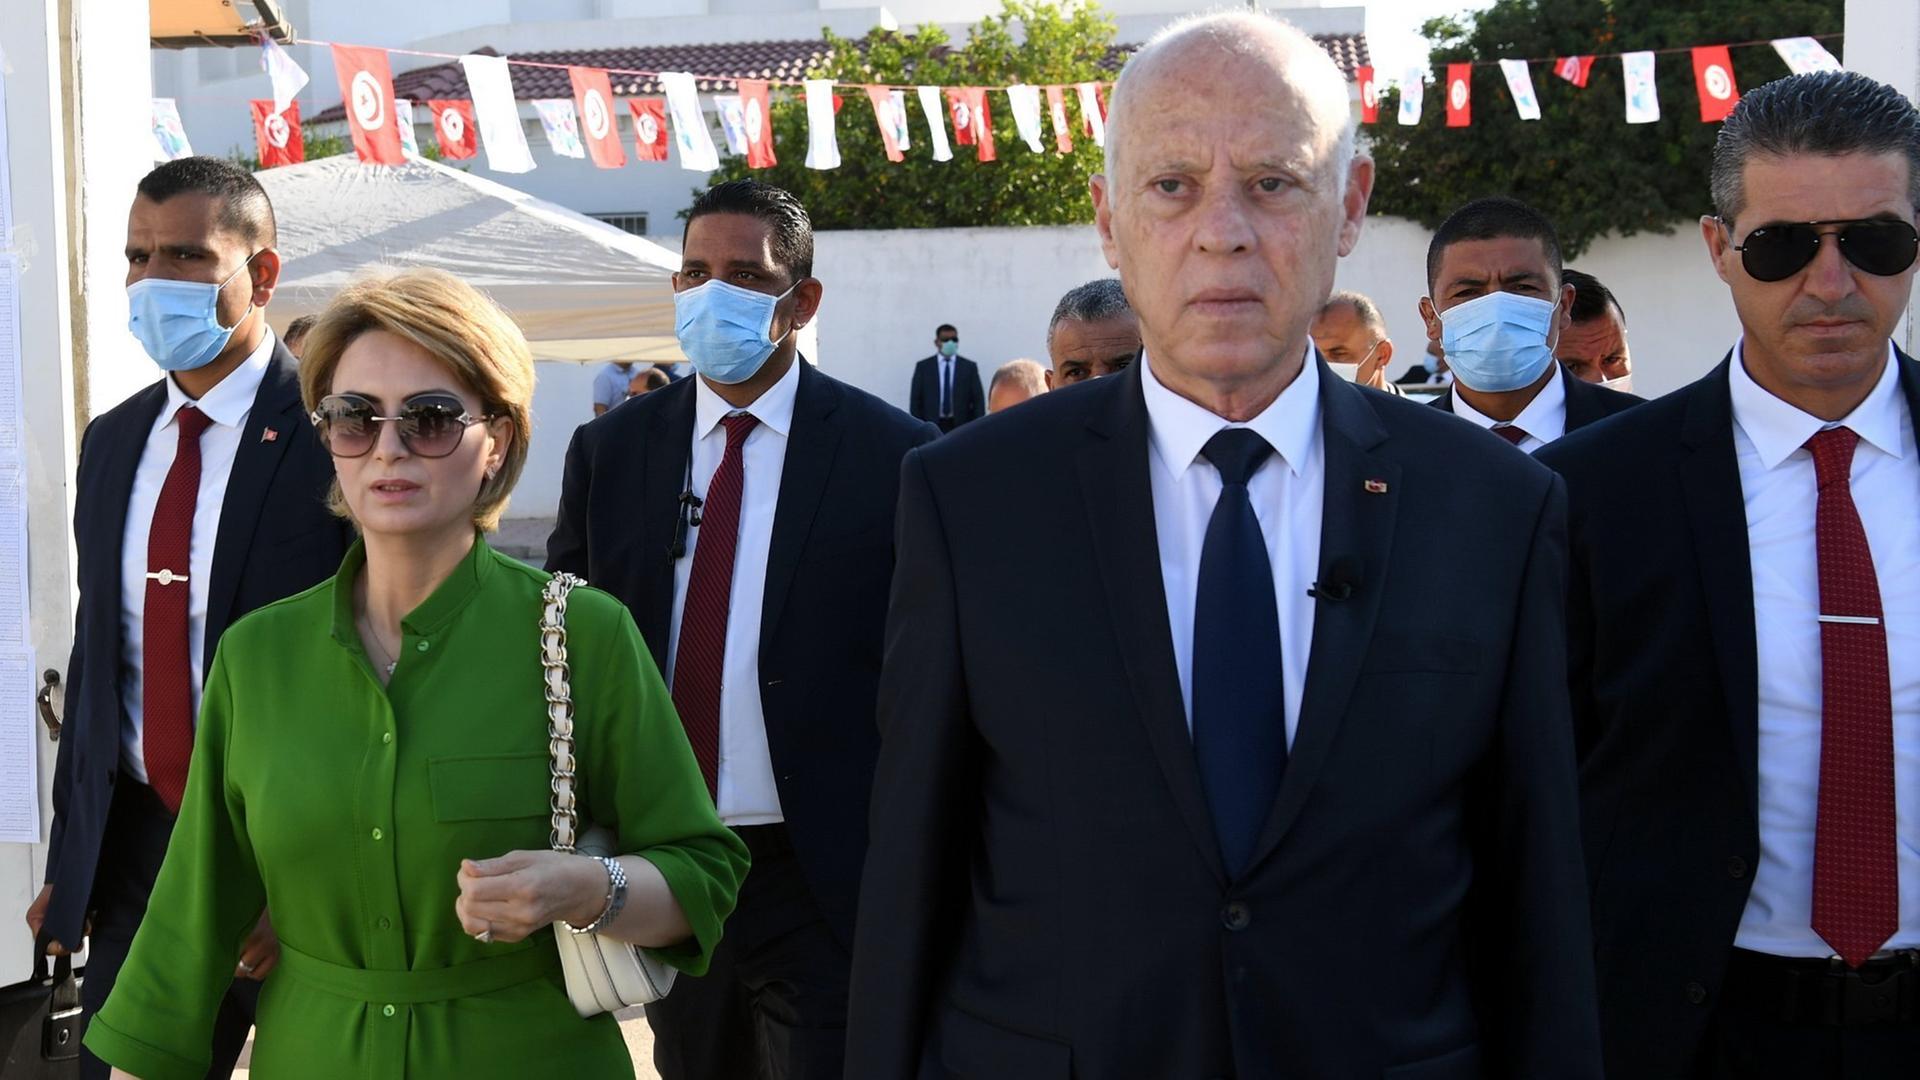 Tunesiens Präsident Kais Saied, begleitet von seiner Ehefrau und mehreren Leibwächtern, geht durch eine mit Wimpeln geschmückte Straße auf die Kamera zu.